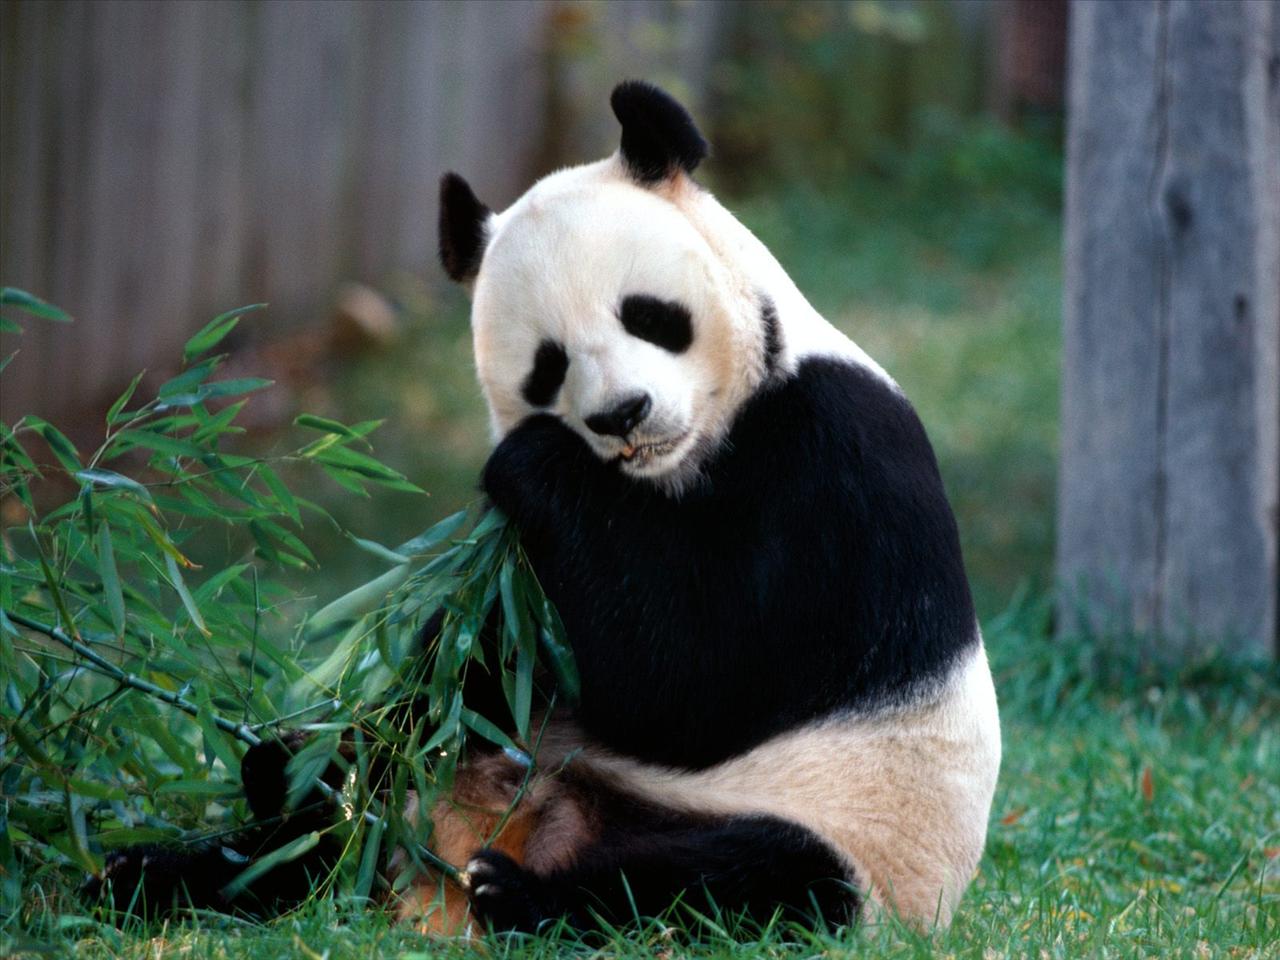 TAPETY ZWIERZĘTA - Snack Time, Panda Bear.jpg